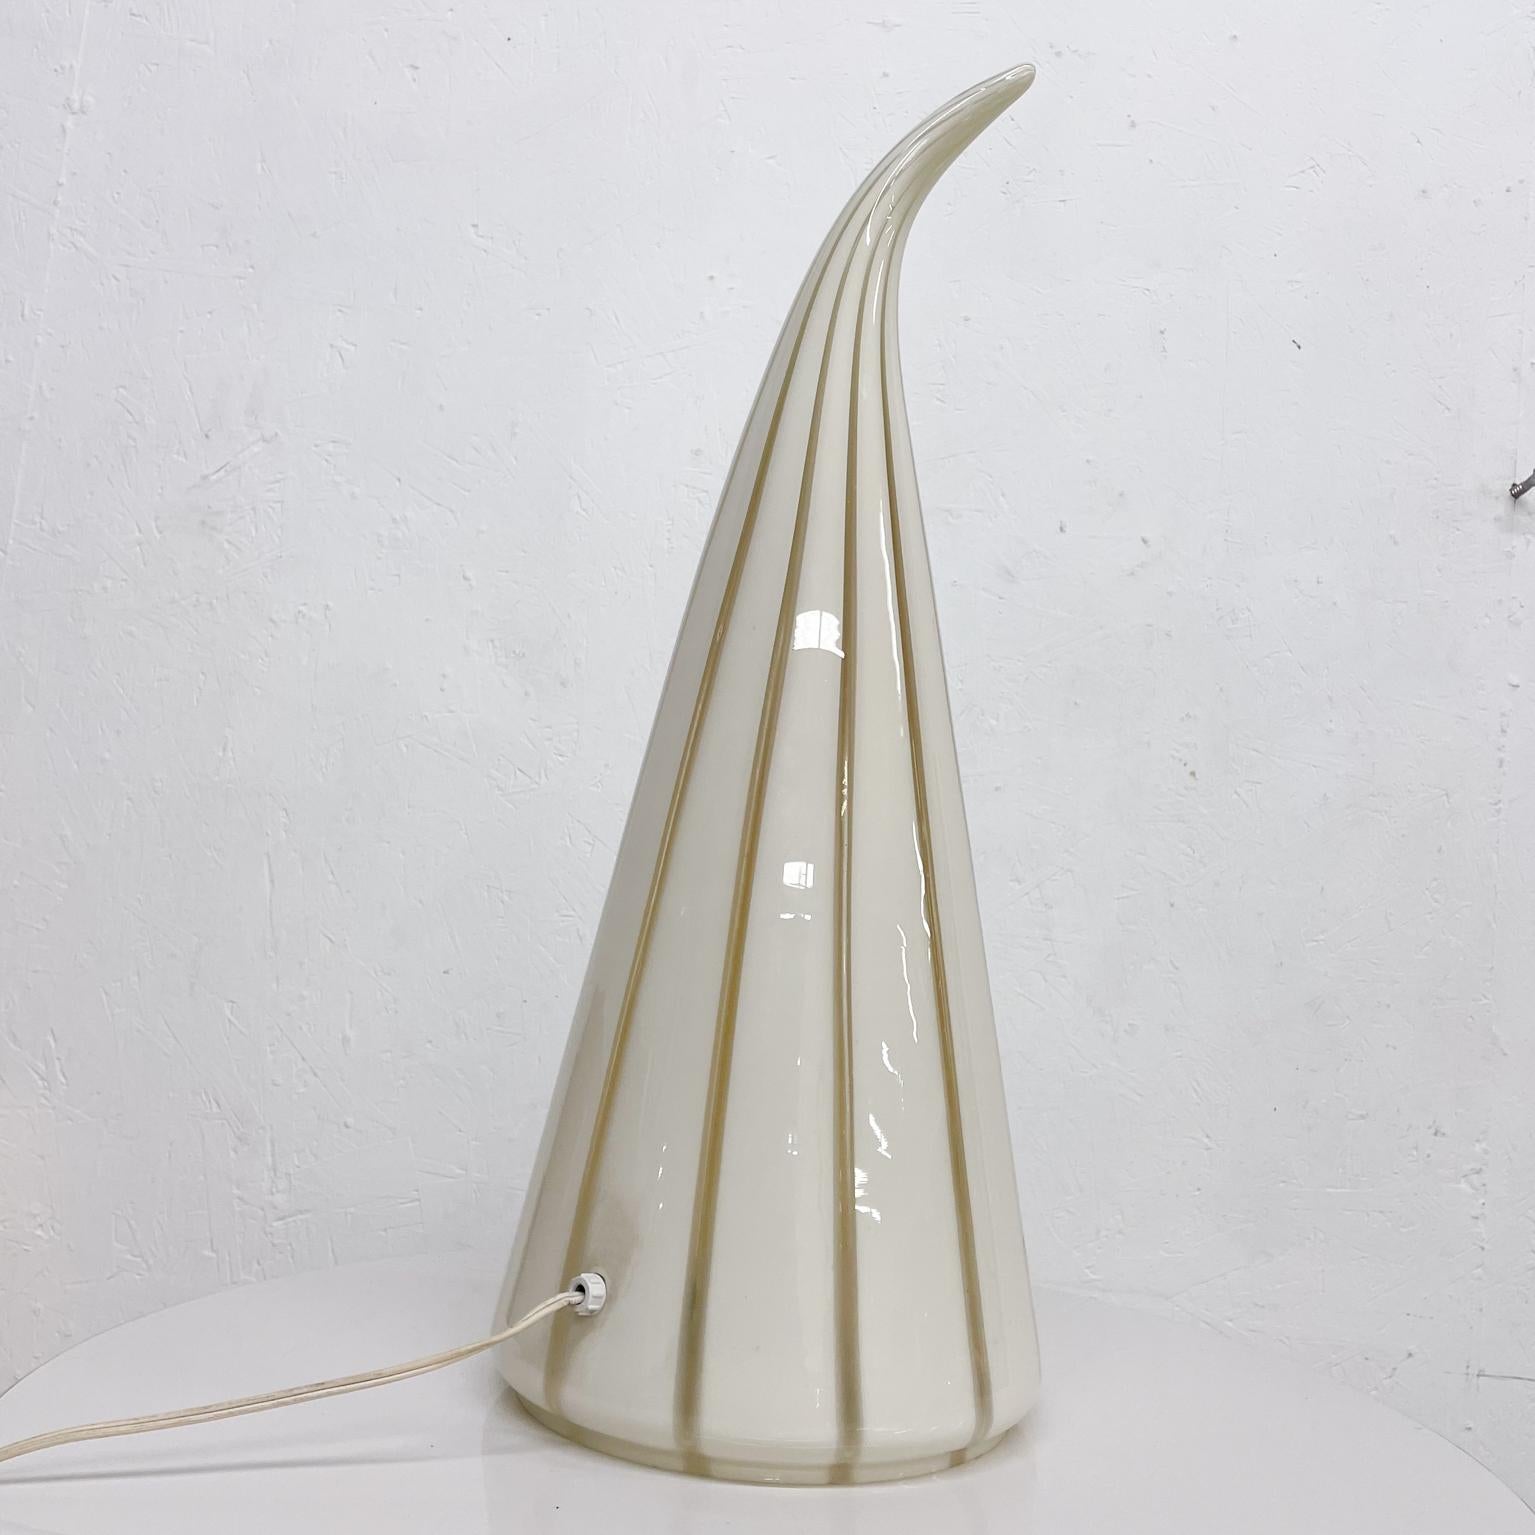 Seguso Vetri d'Arte Milky White Swirled Murano Glass Table Lamp, Italy, 1960s In Good Condition For Sale In Chula Vista, CA